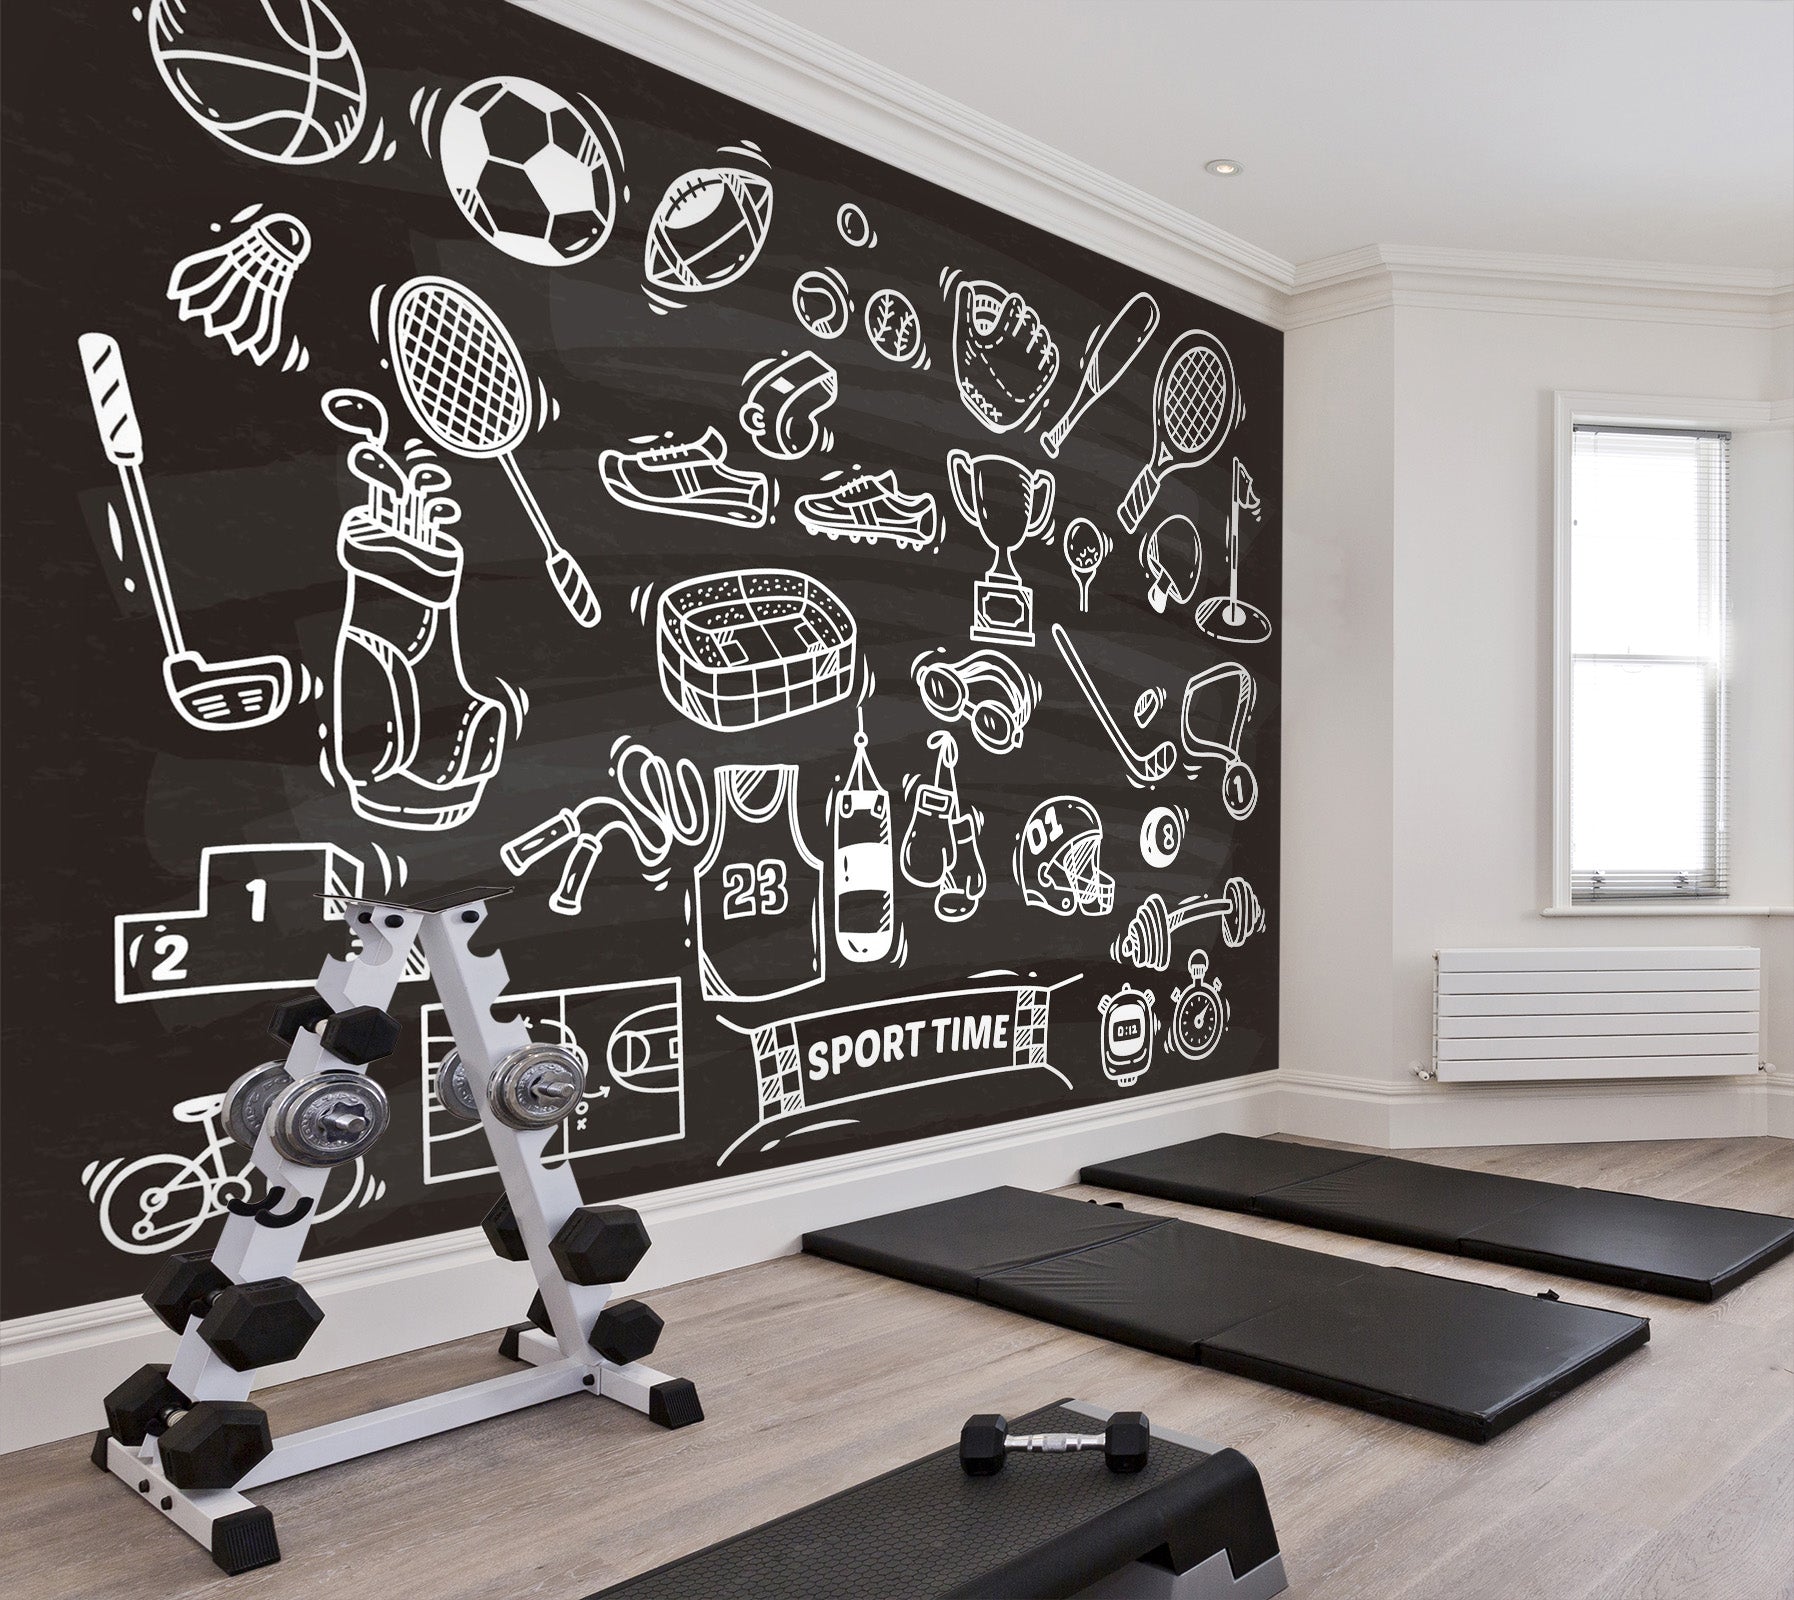 3D Fitness Equipment 264 Wall Murals